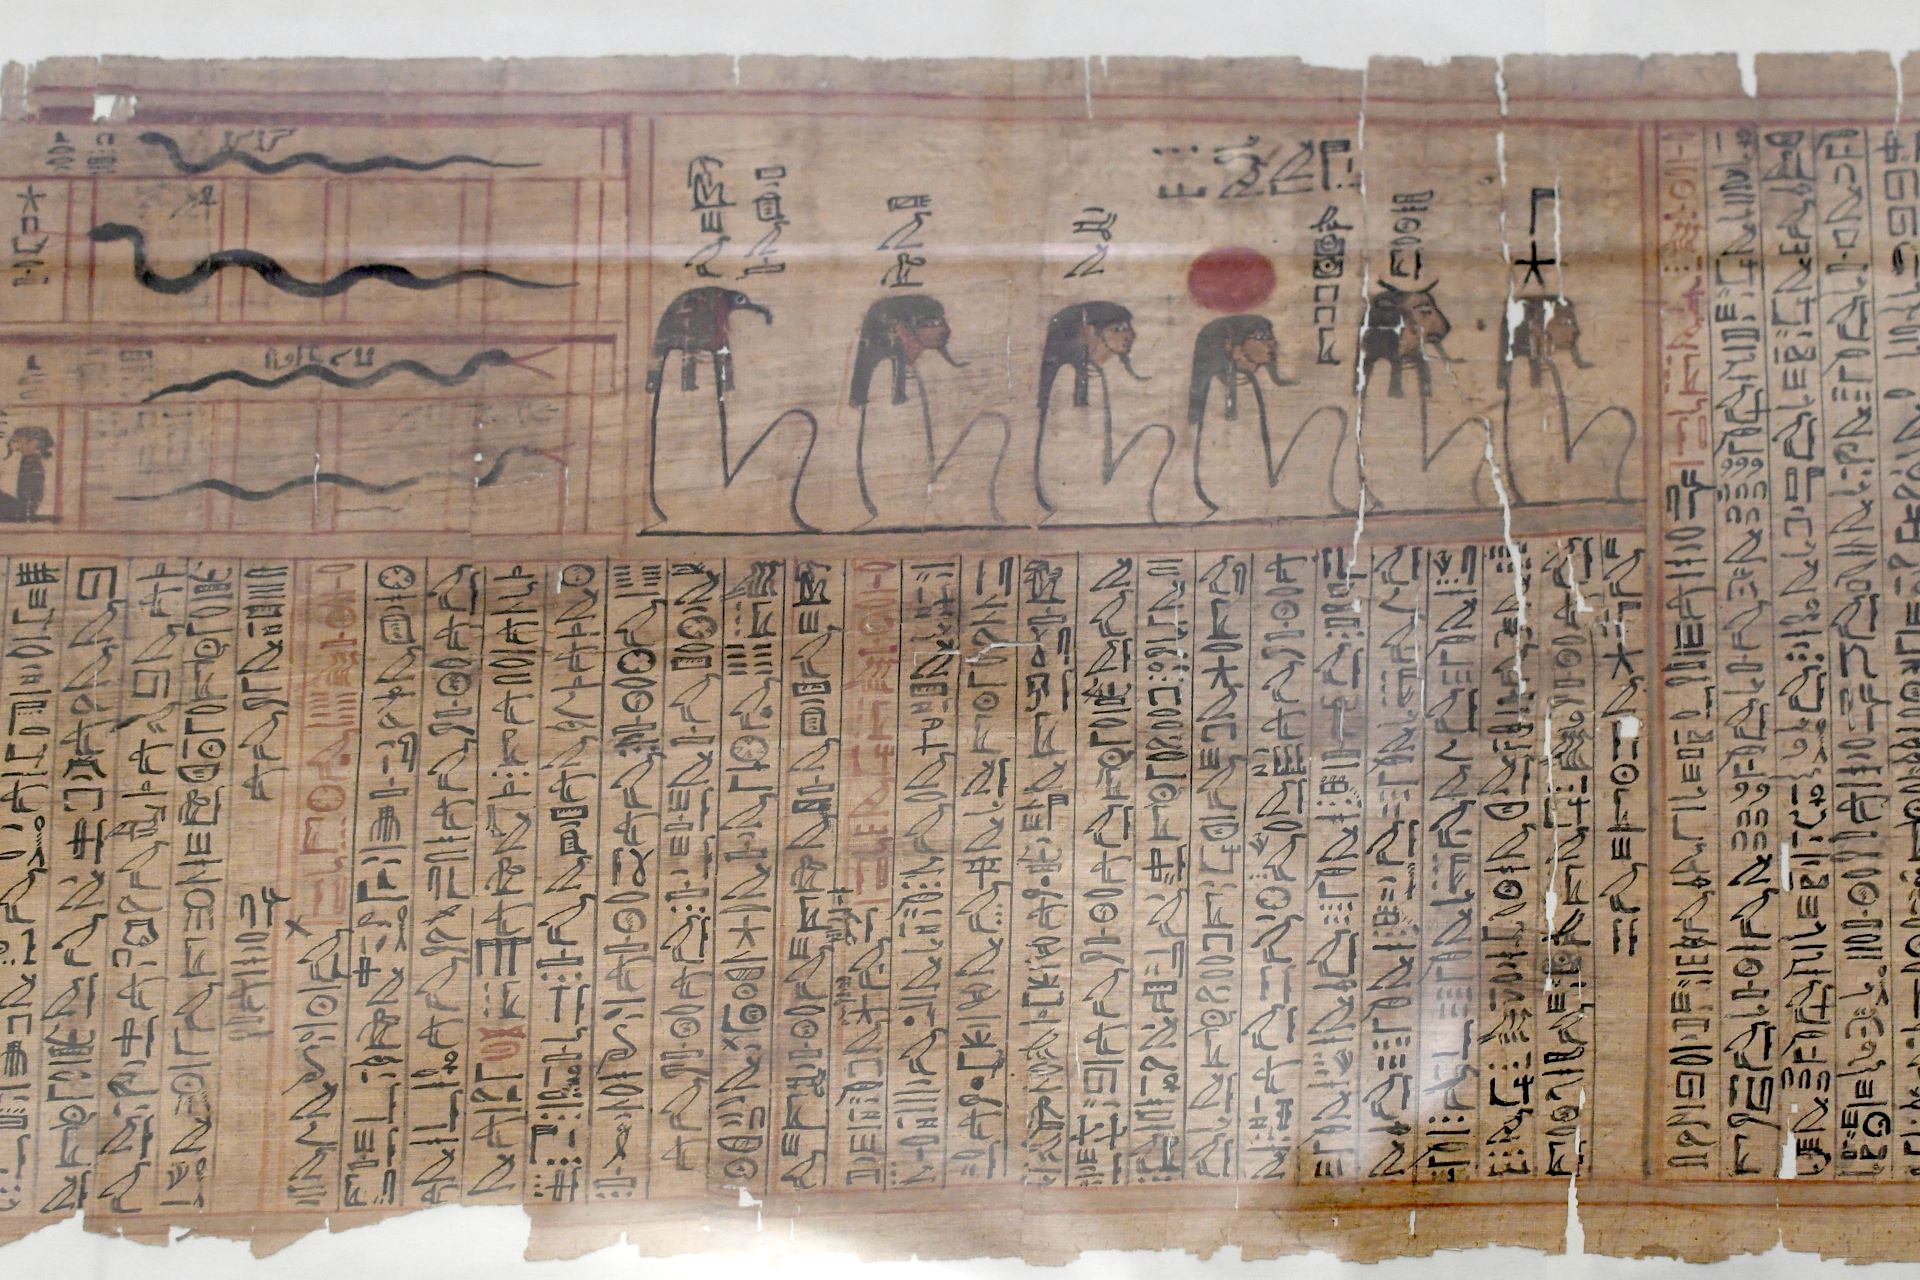 Totenbuch des Sesostris, Kursivhieroglyphen, 18. Dynastie des Neues Reichs (15. Jhdt.v.Chr.)